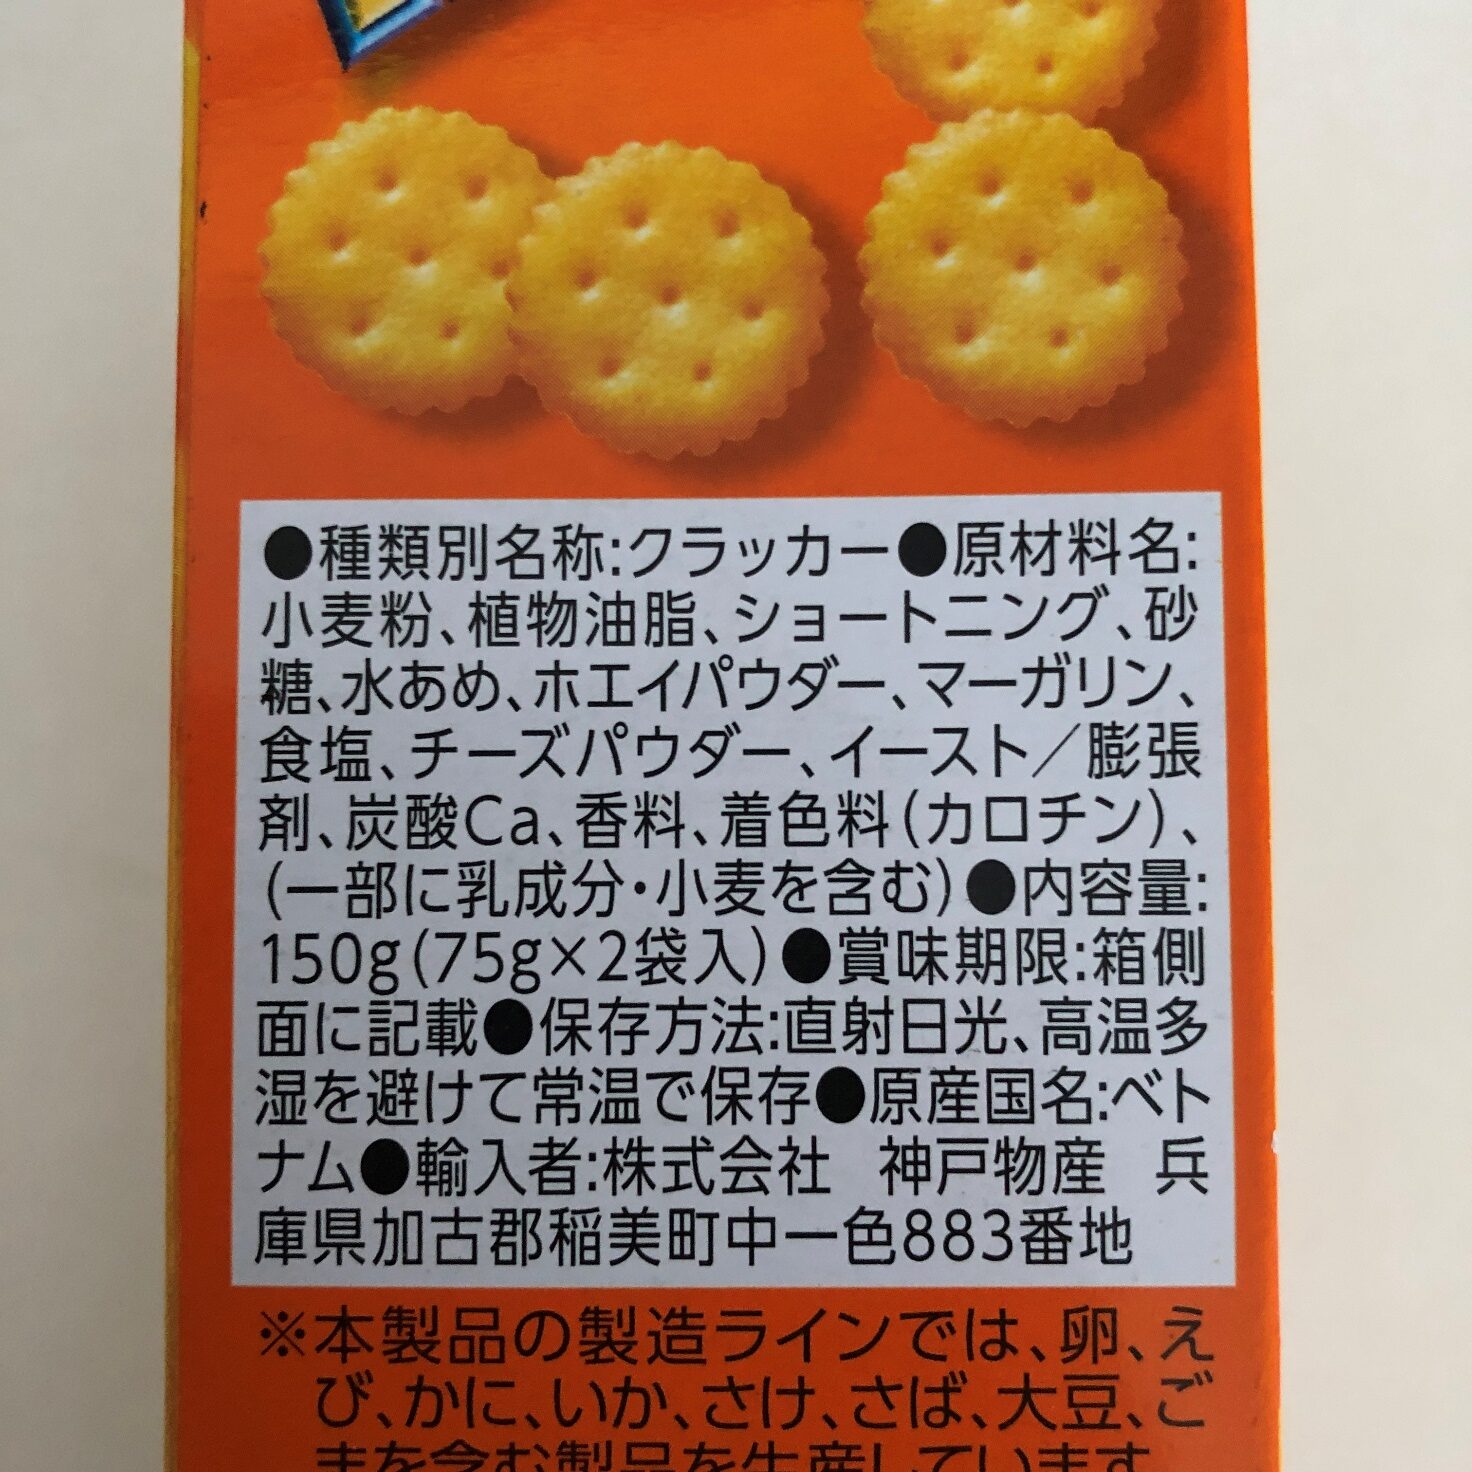 業務スーパーのチーズスナックの原材料名と原産国名の表記